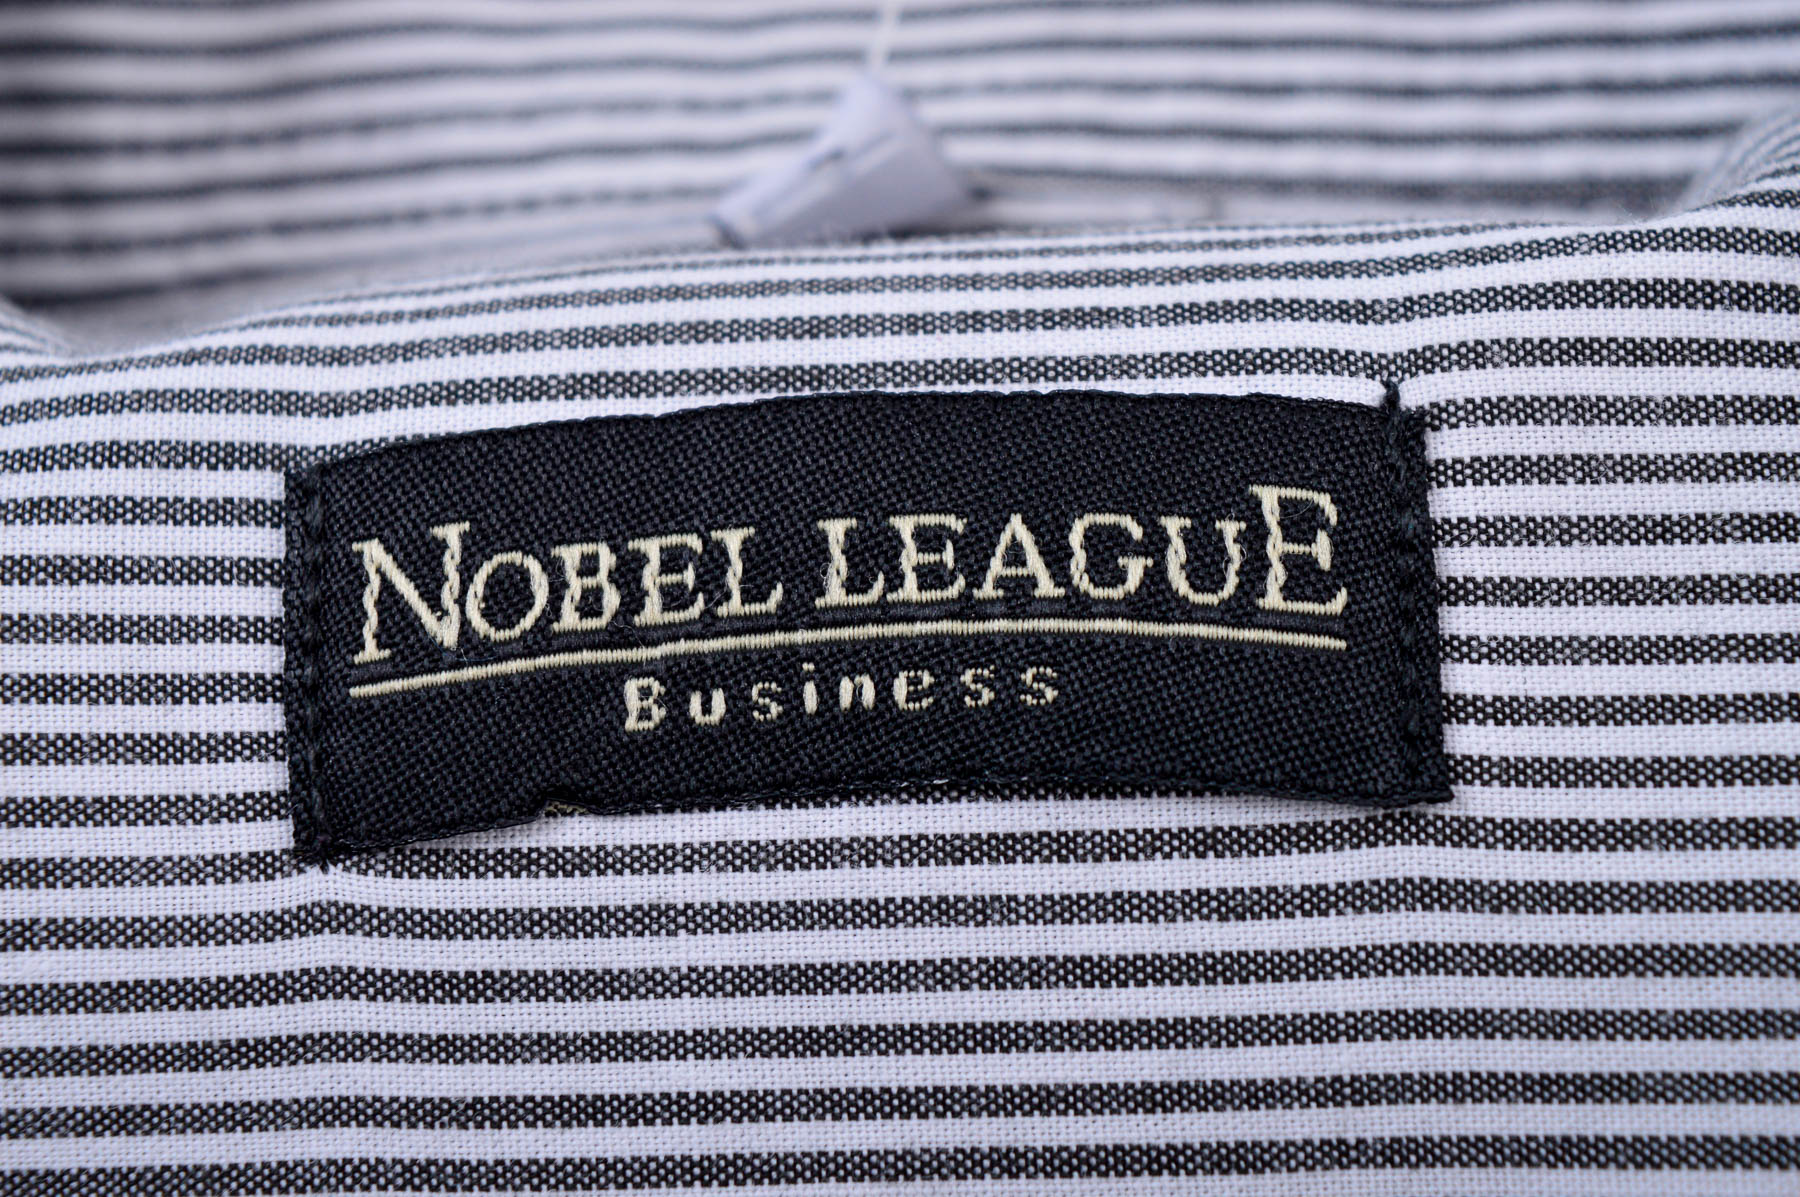 Ανδρικό πουκάμισο - Nobel League - 2